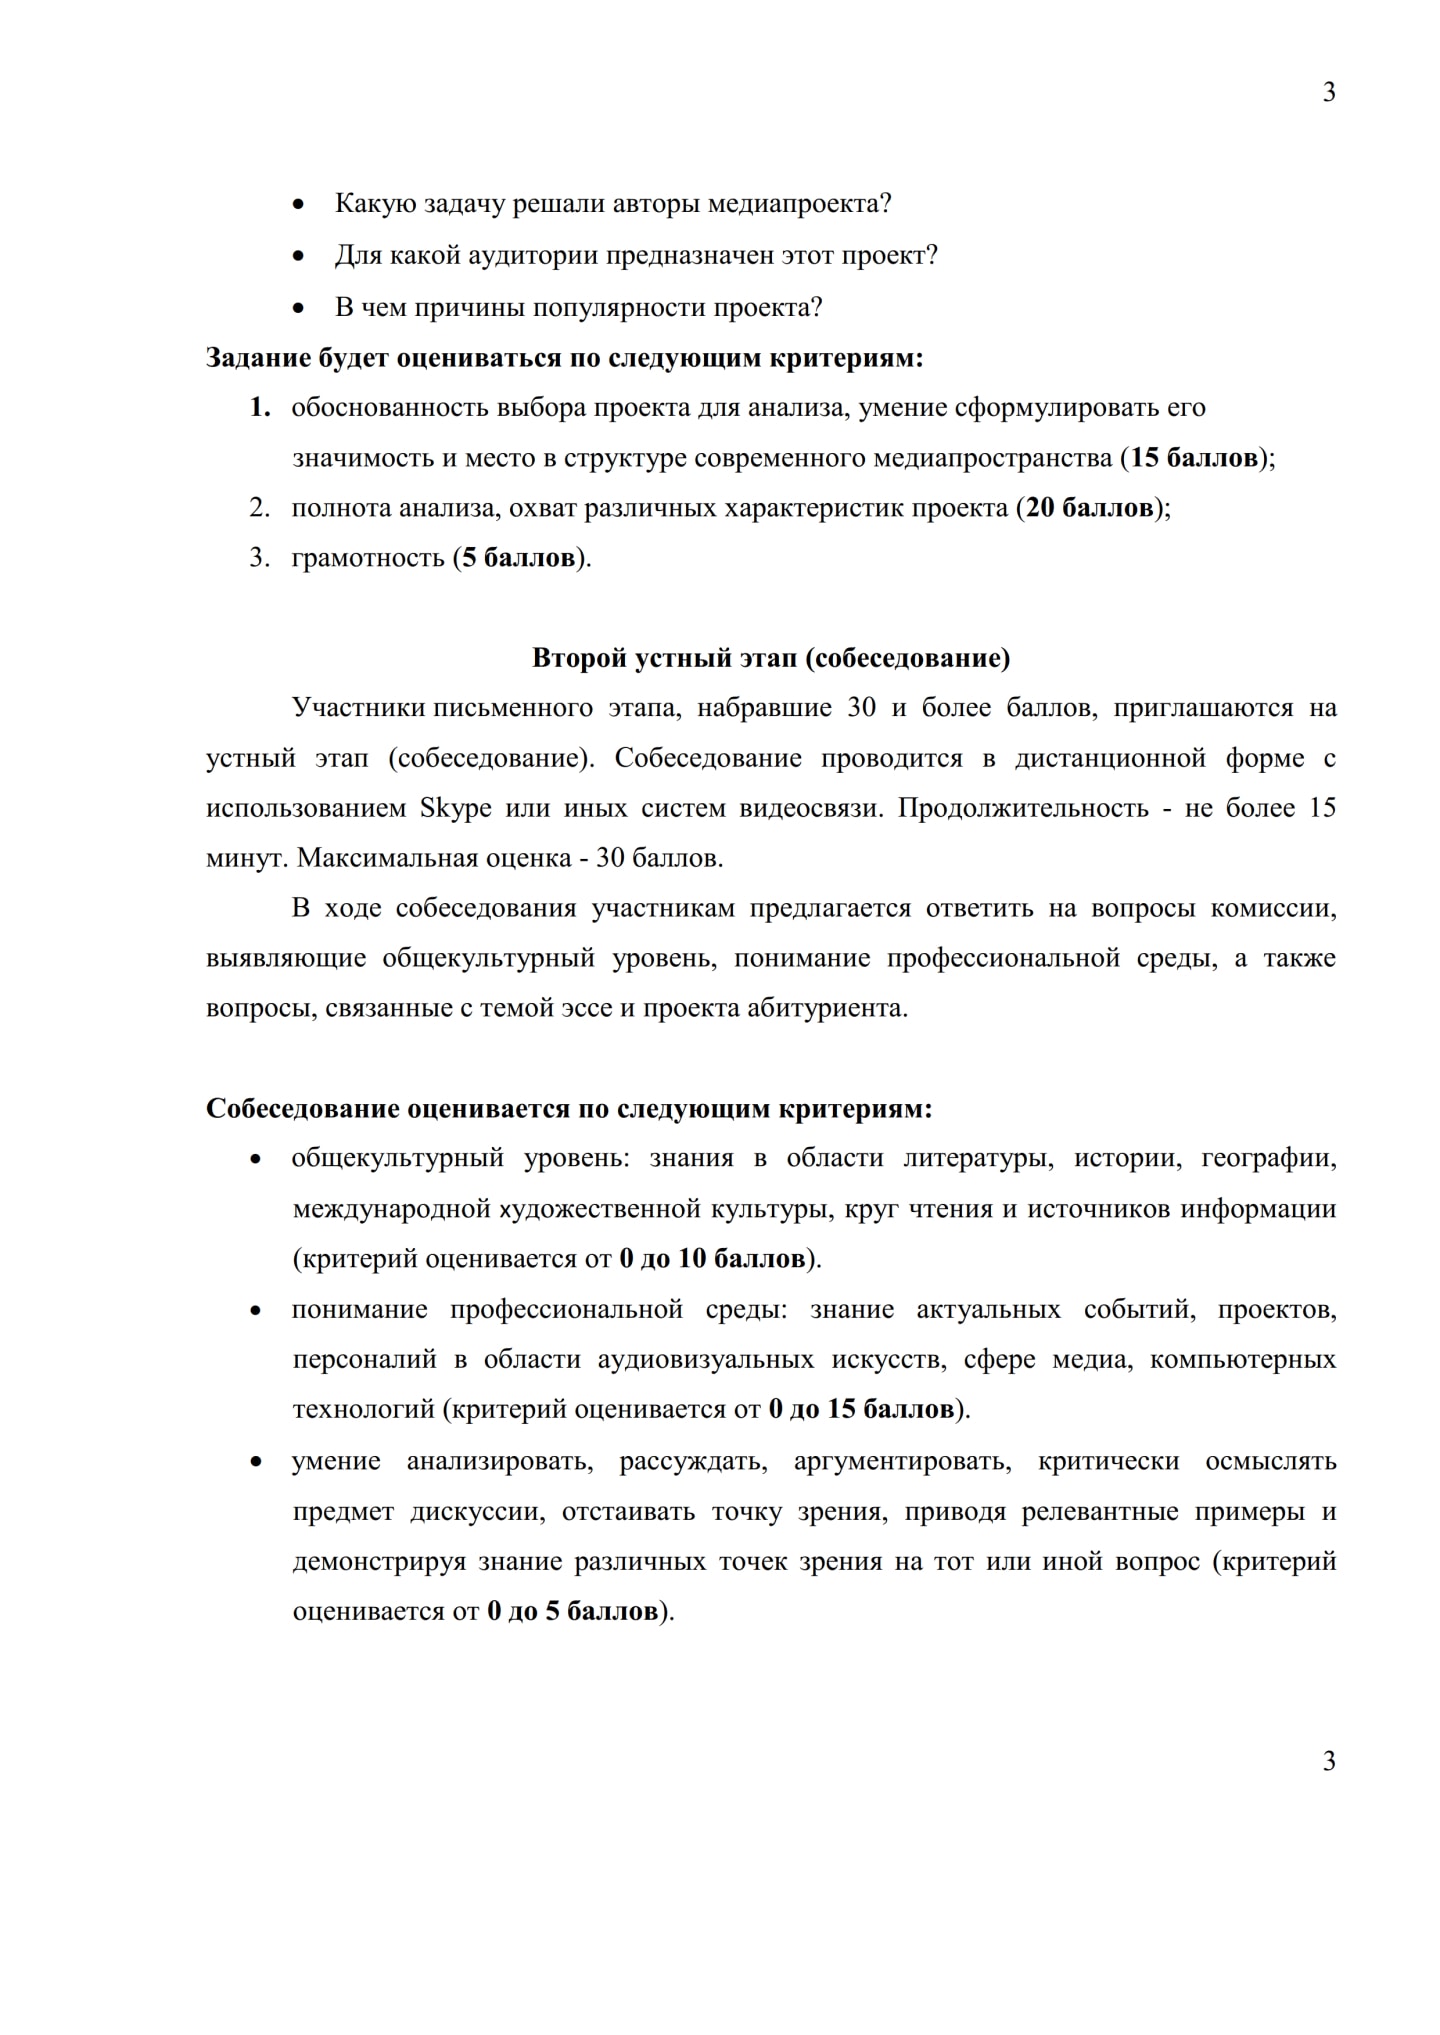 俄罗斯大学入学考试《传媒写作》|俄罗斯留学